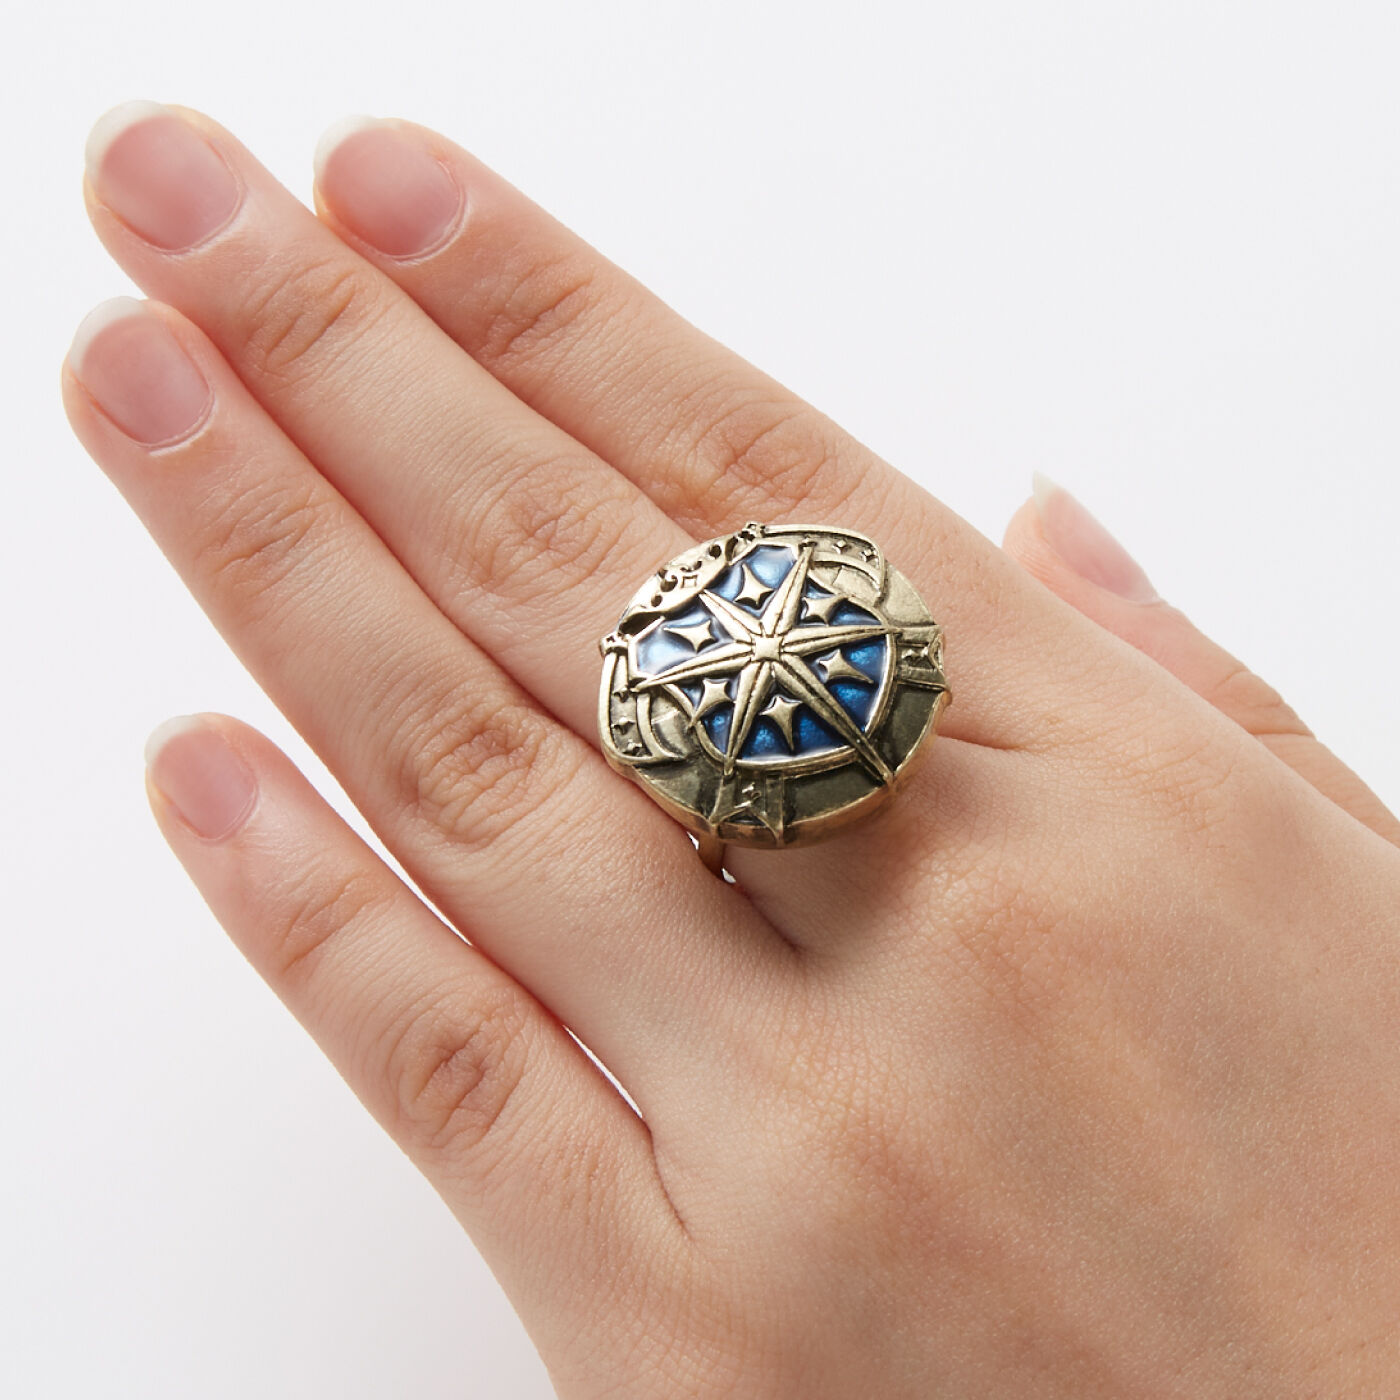 魔法部|魔法部×魔法使いの約束　国章ボタンカバー〈西の国〉|指輪に付ければ、存在感のある大きめのモチーフリング風に。※指輪の形状によっては付けられない場合があります。※お届けする柄とは異なります。